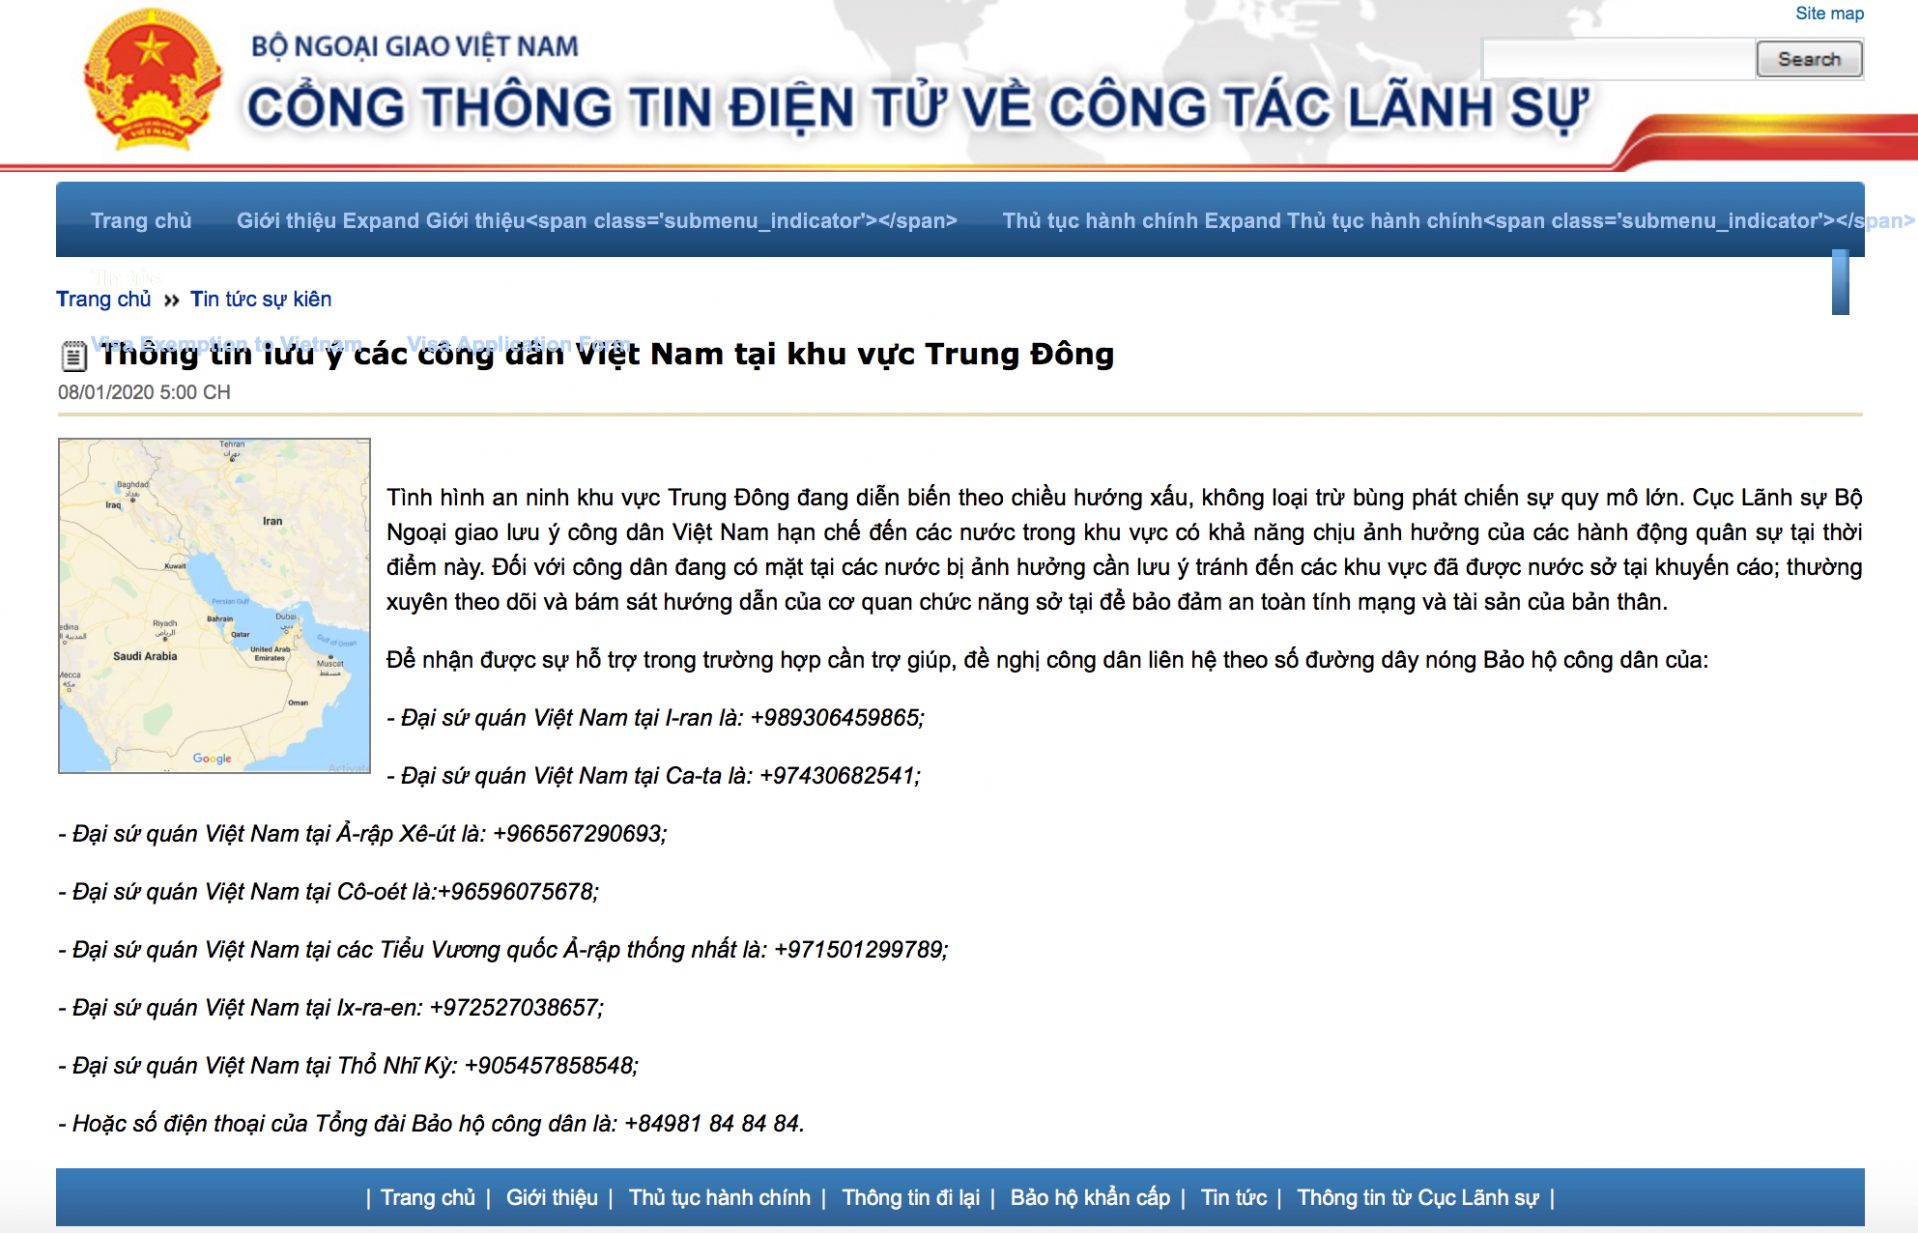 Cục Lãnh sự, Bộ Ngoại giao ra thông cáo lưu ý công dân Việt Nam ở Trung Đông